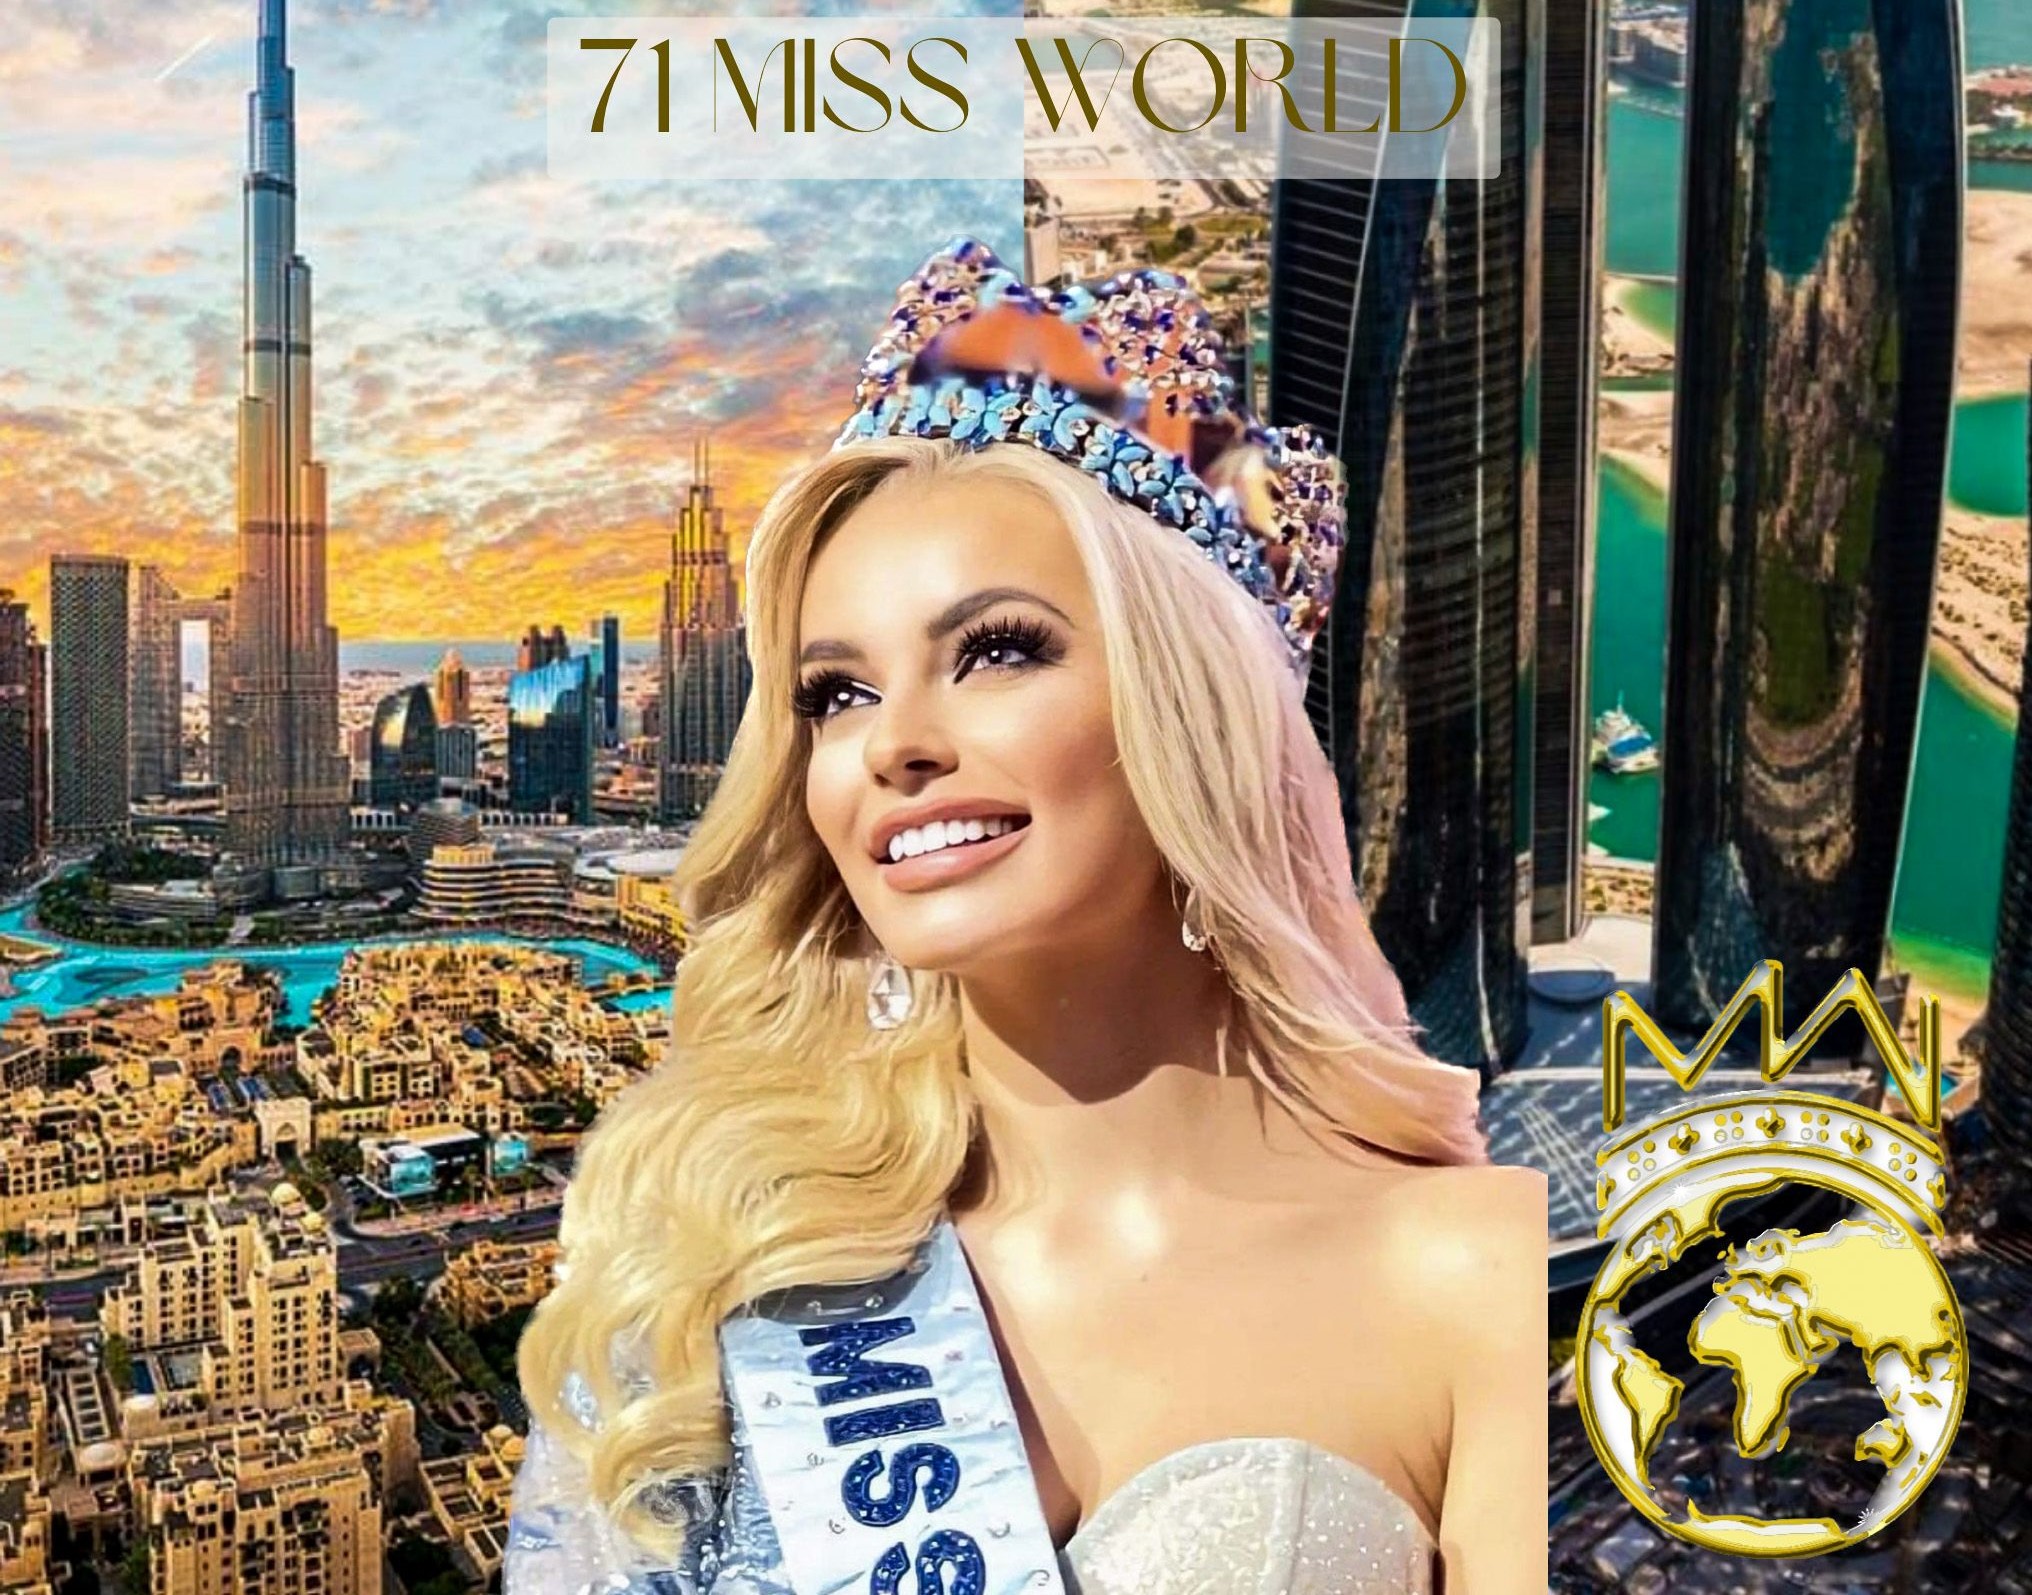     L’élection Miss Monde aura lieu aux Émirats arabes unis

